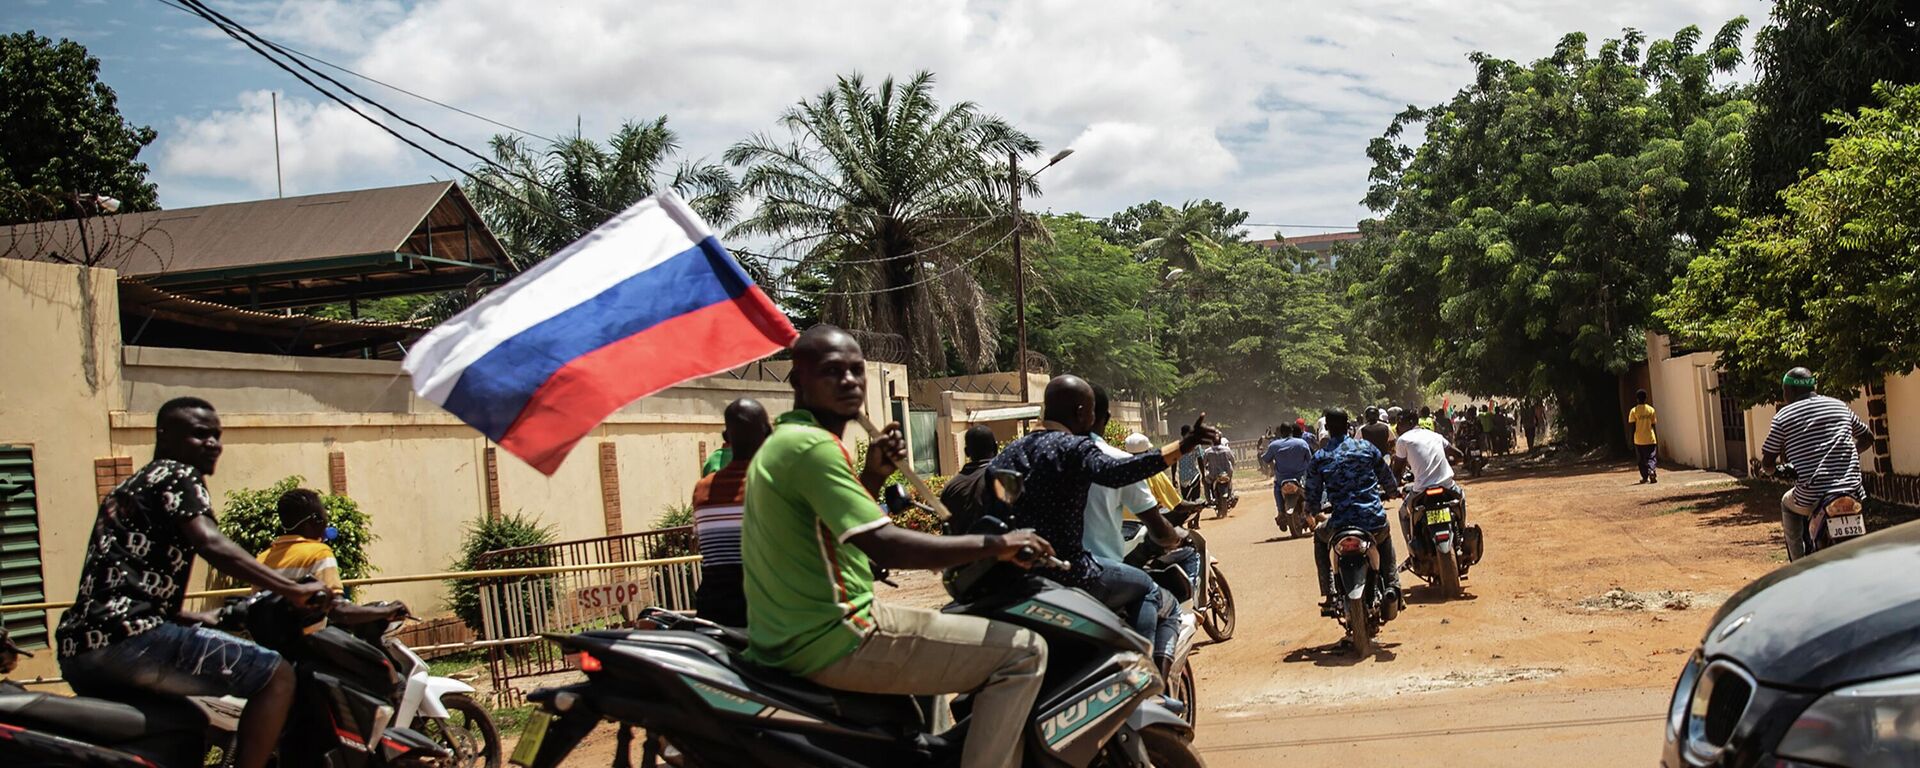 Partidarios del capitán Ibrahim Traore desfilan agitando una bandera rusa en las calles de Uagadugú, Burkina Faso, el domingo 2 de octubre de 2022.  - Sputnik Mundo, 1920, 08.10.2022